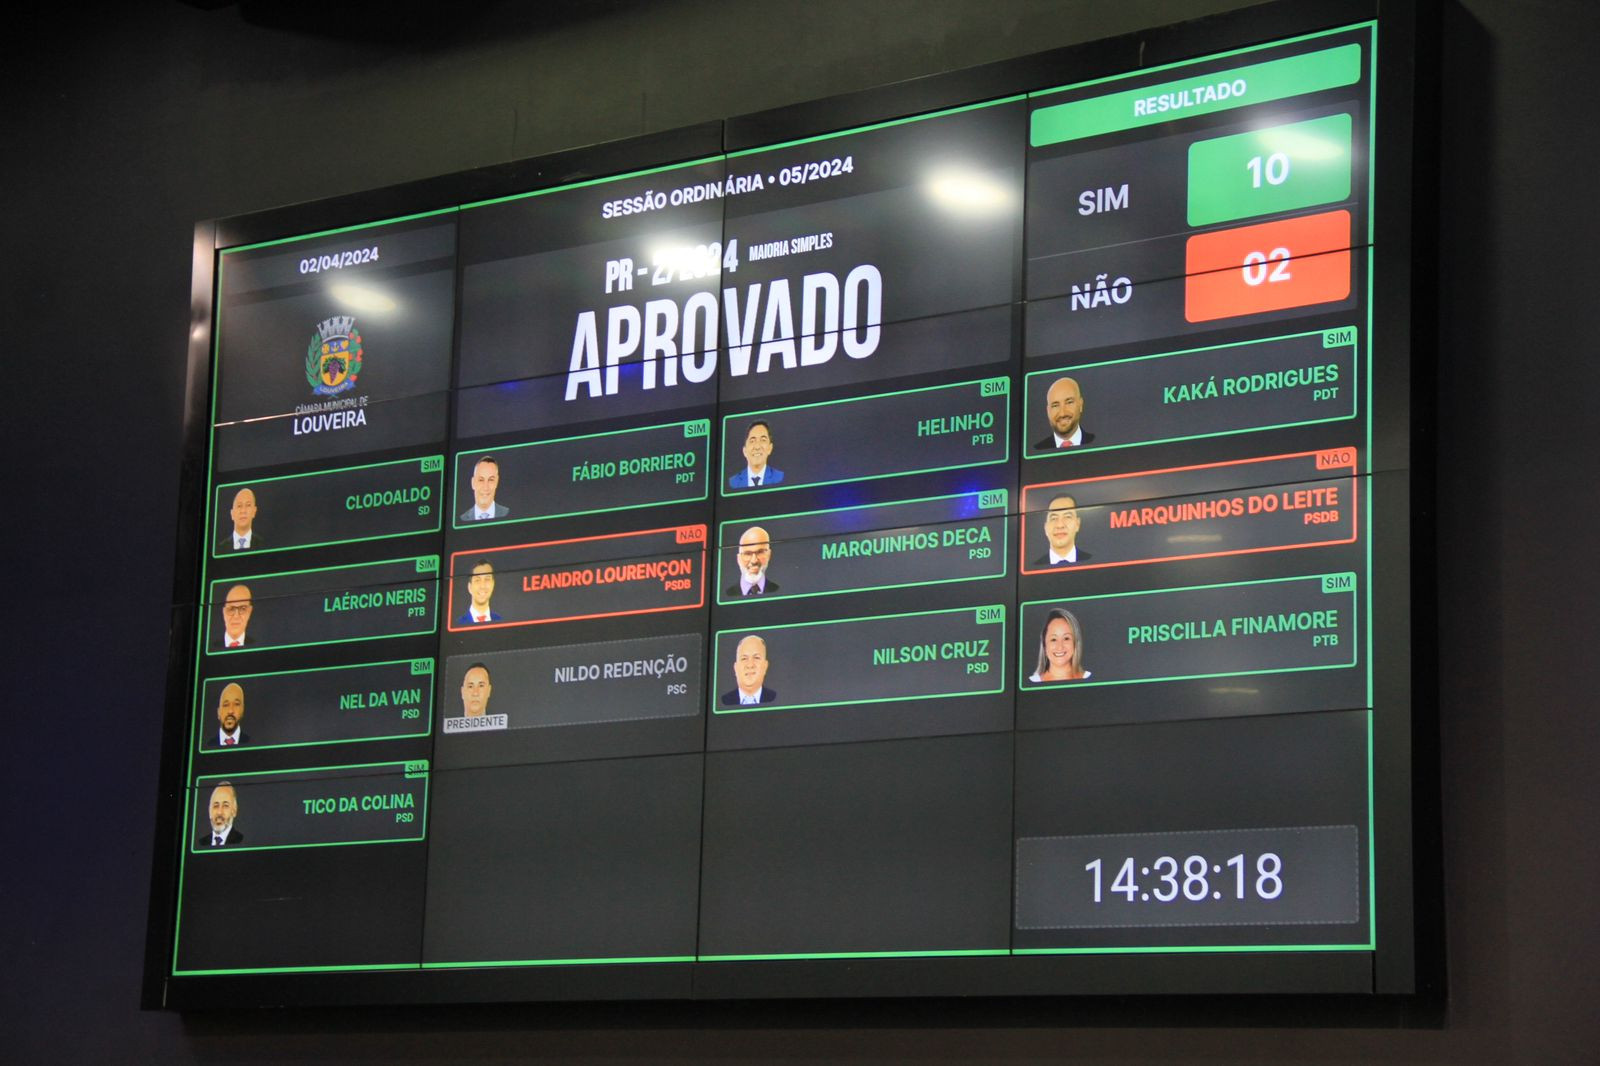 Evento em Brasília terá participação de vereadores de Louveira